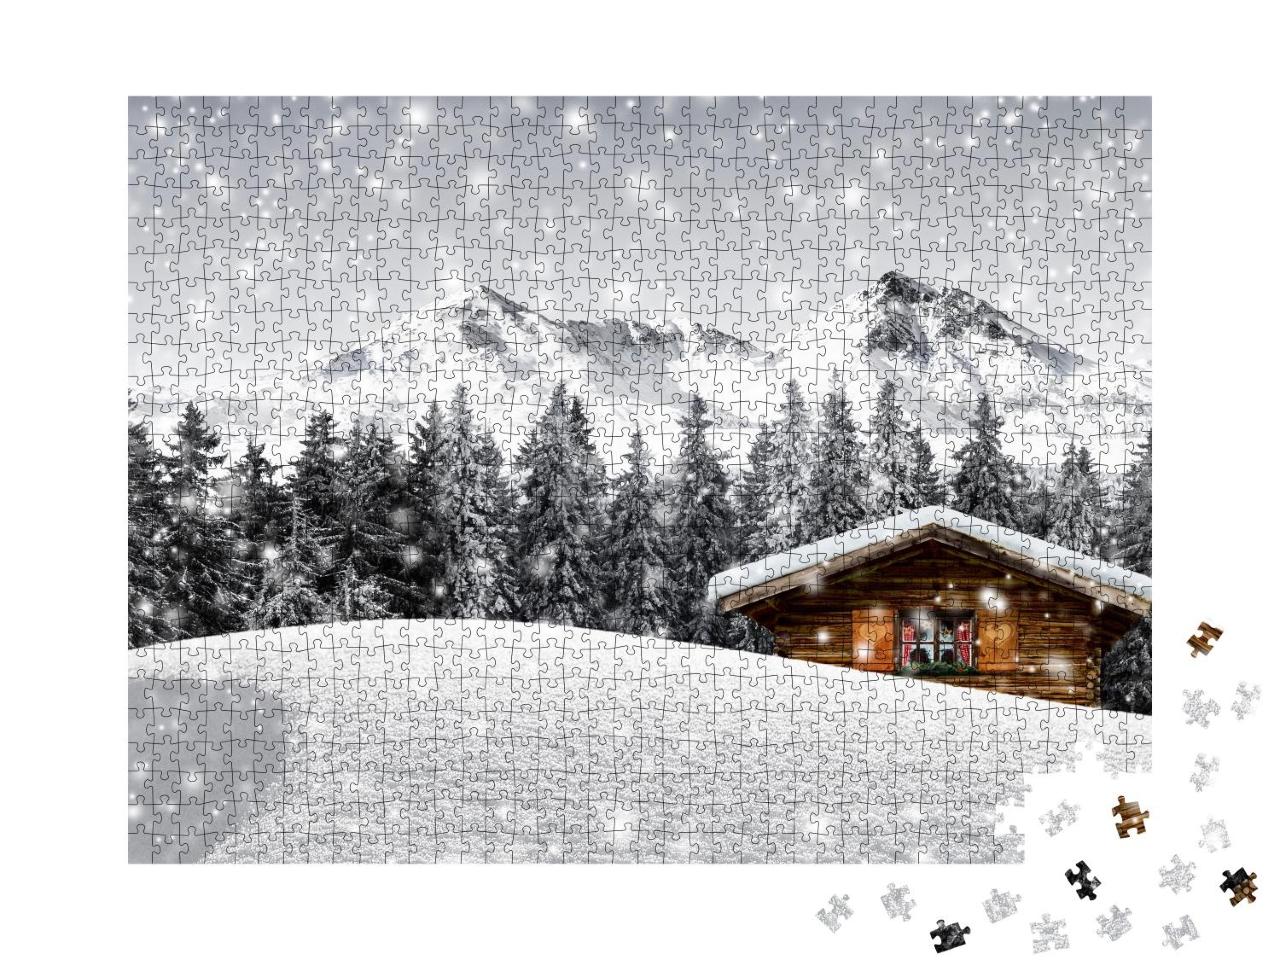 Puzzle 1000 Teile „Gemütliche Holzhütte in den verschneiten Bergen“